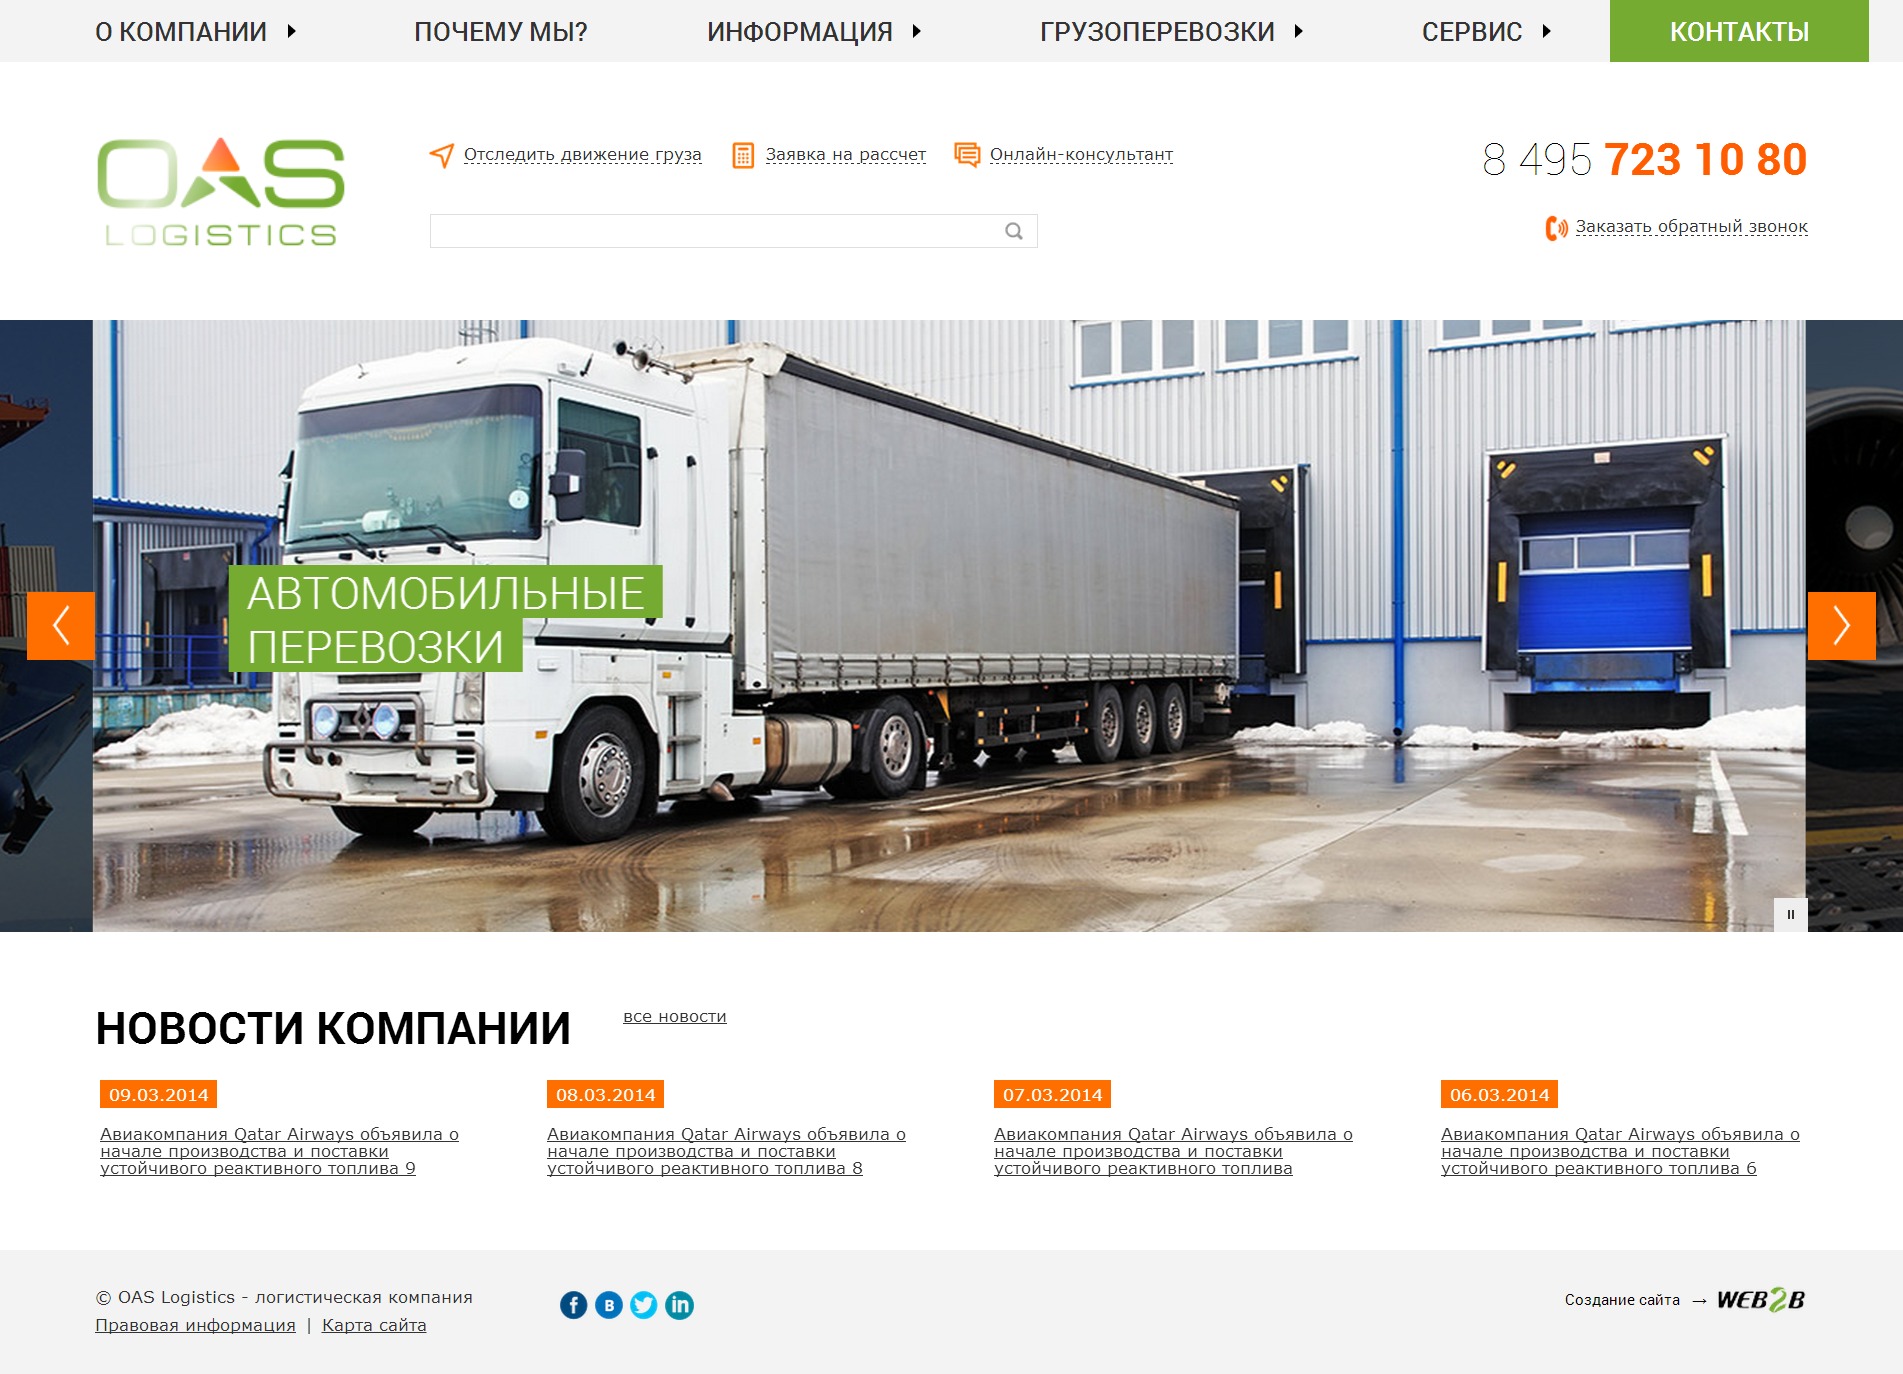 OAS - международные перевозки грузов